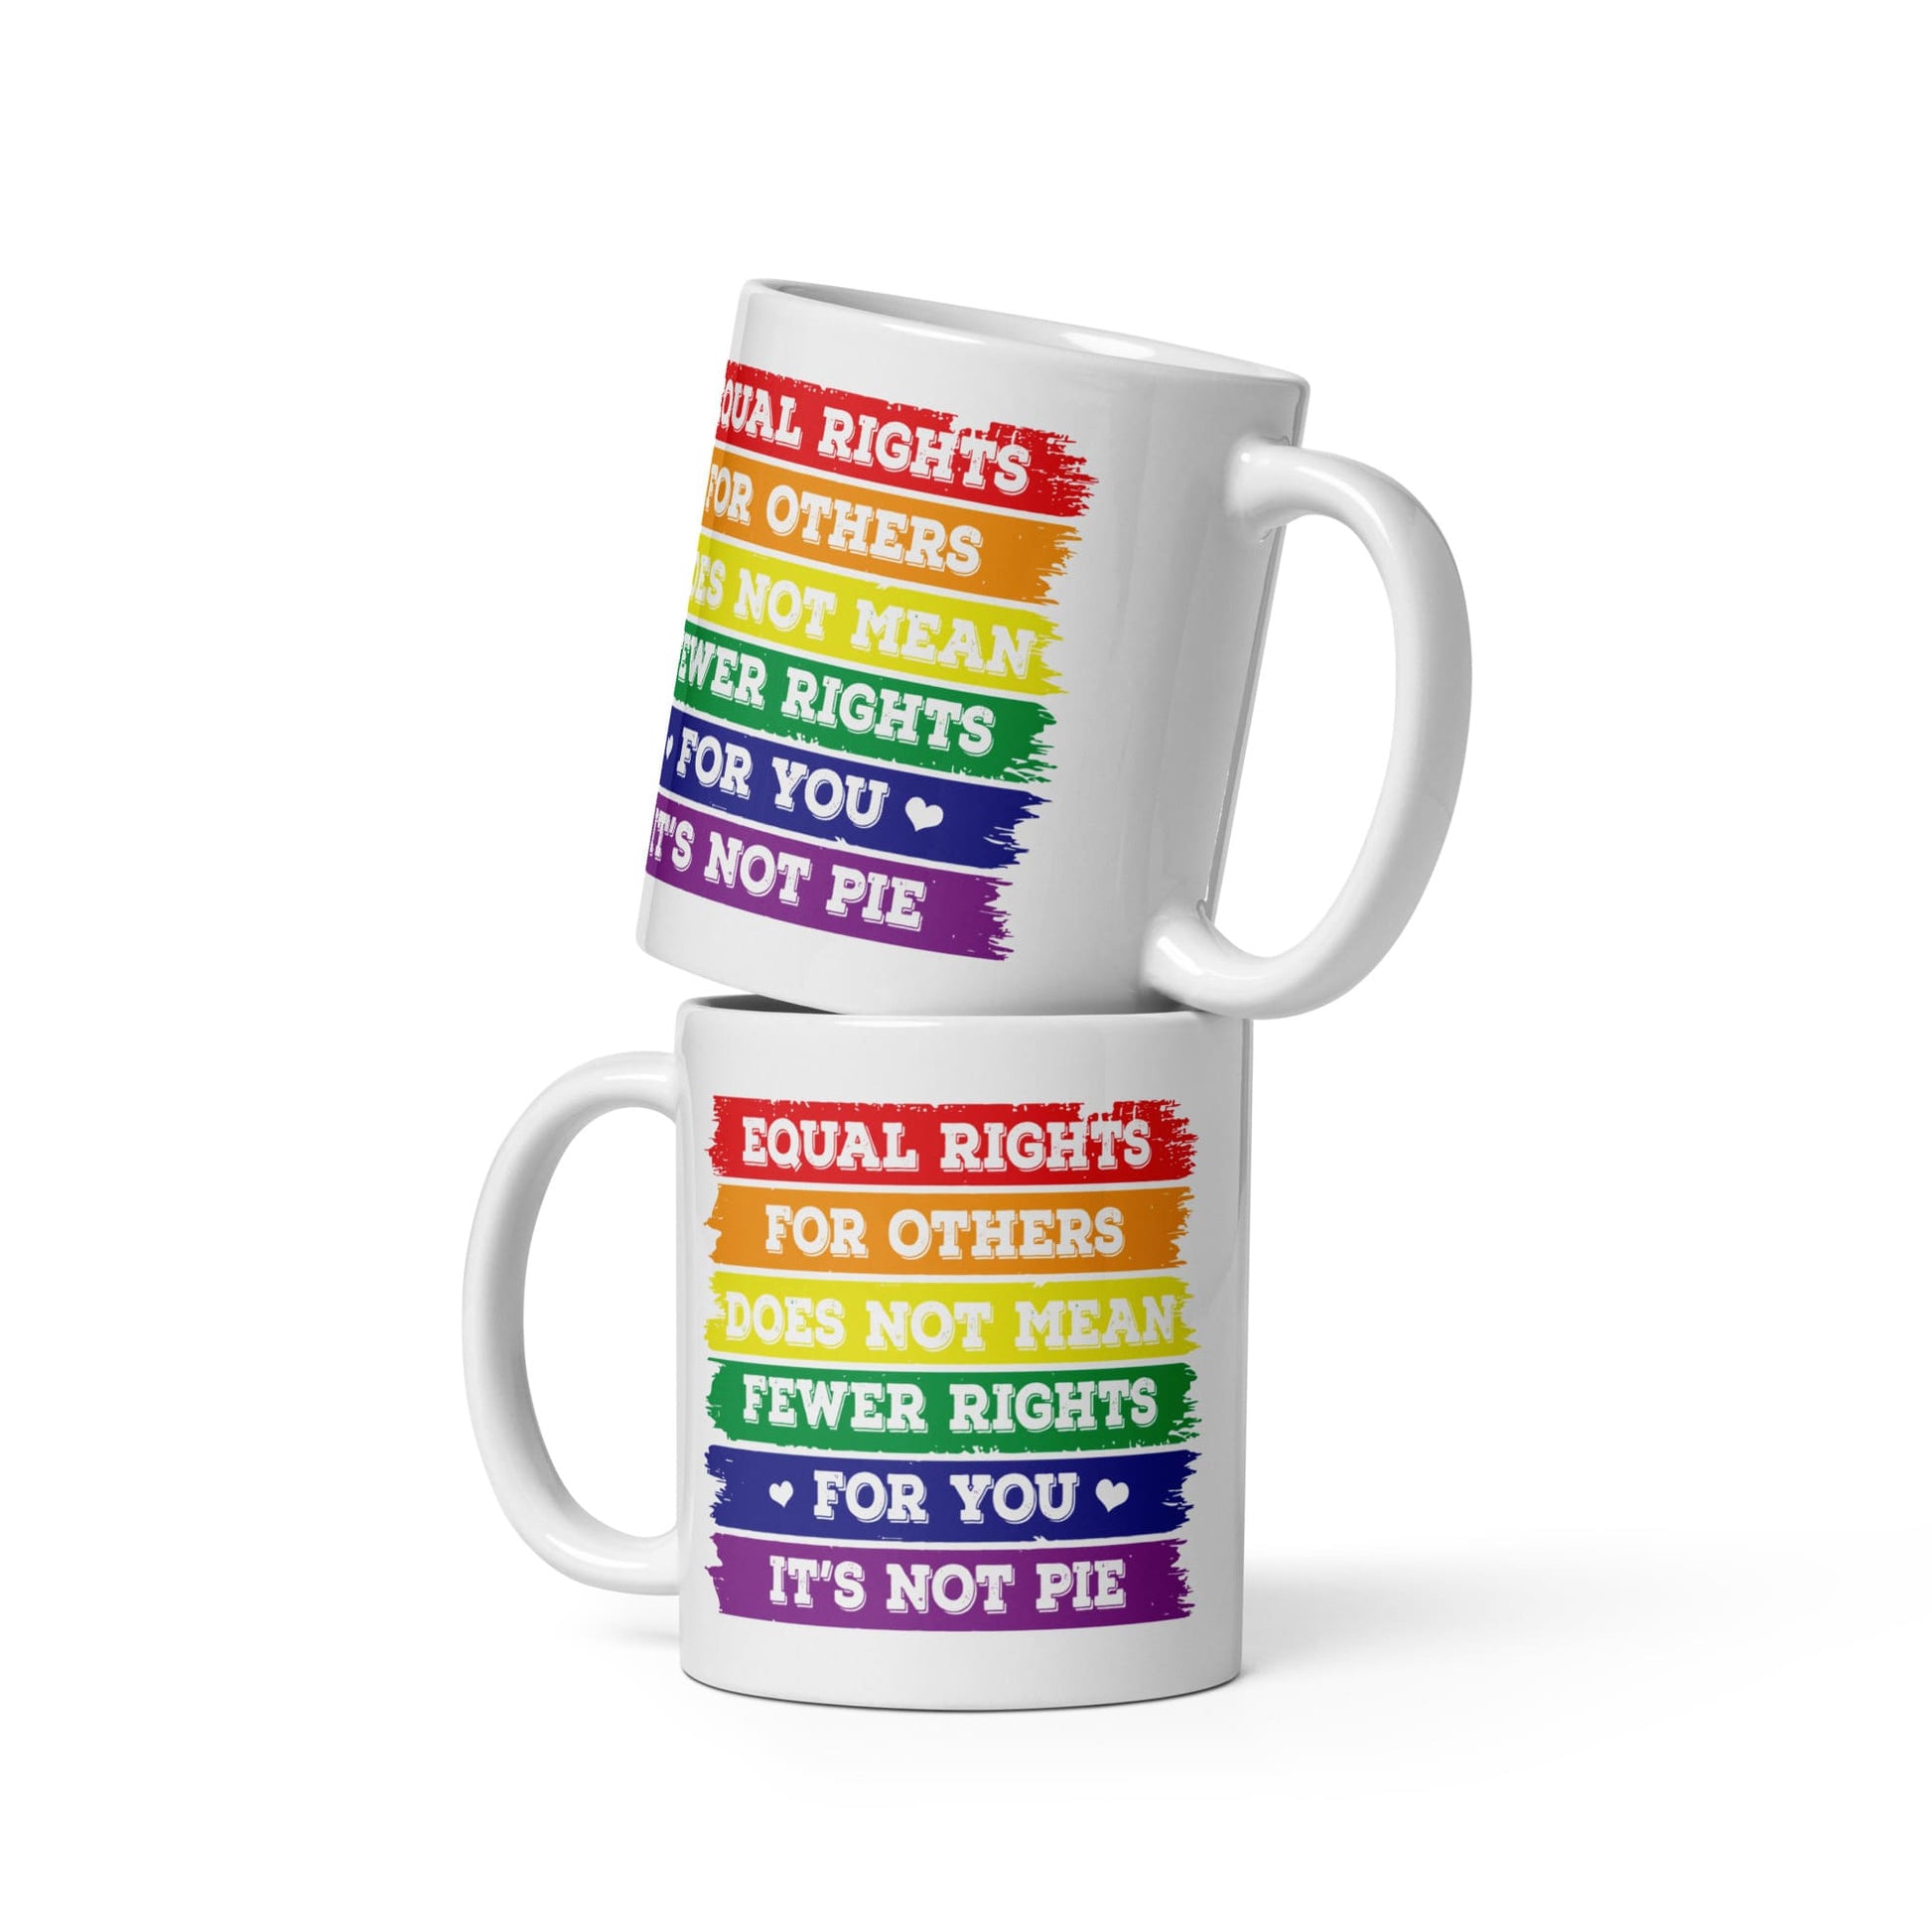 LGBTQ equal rights coffee or tea mug both sides